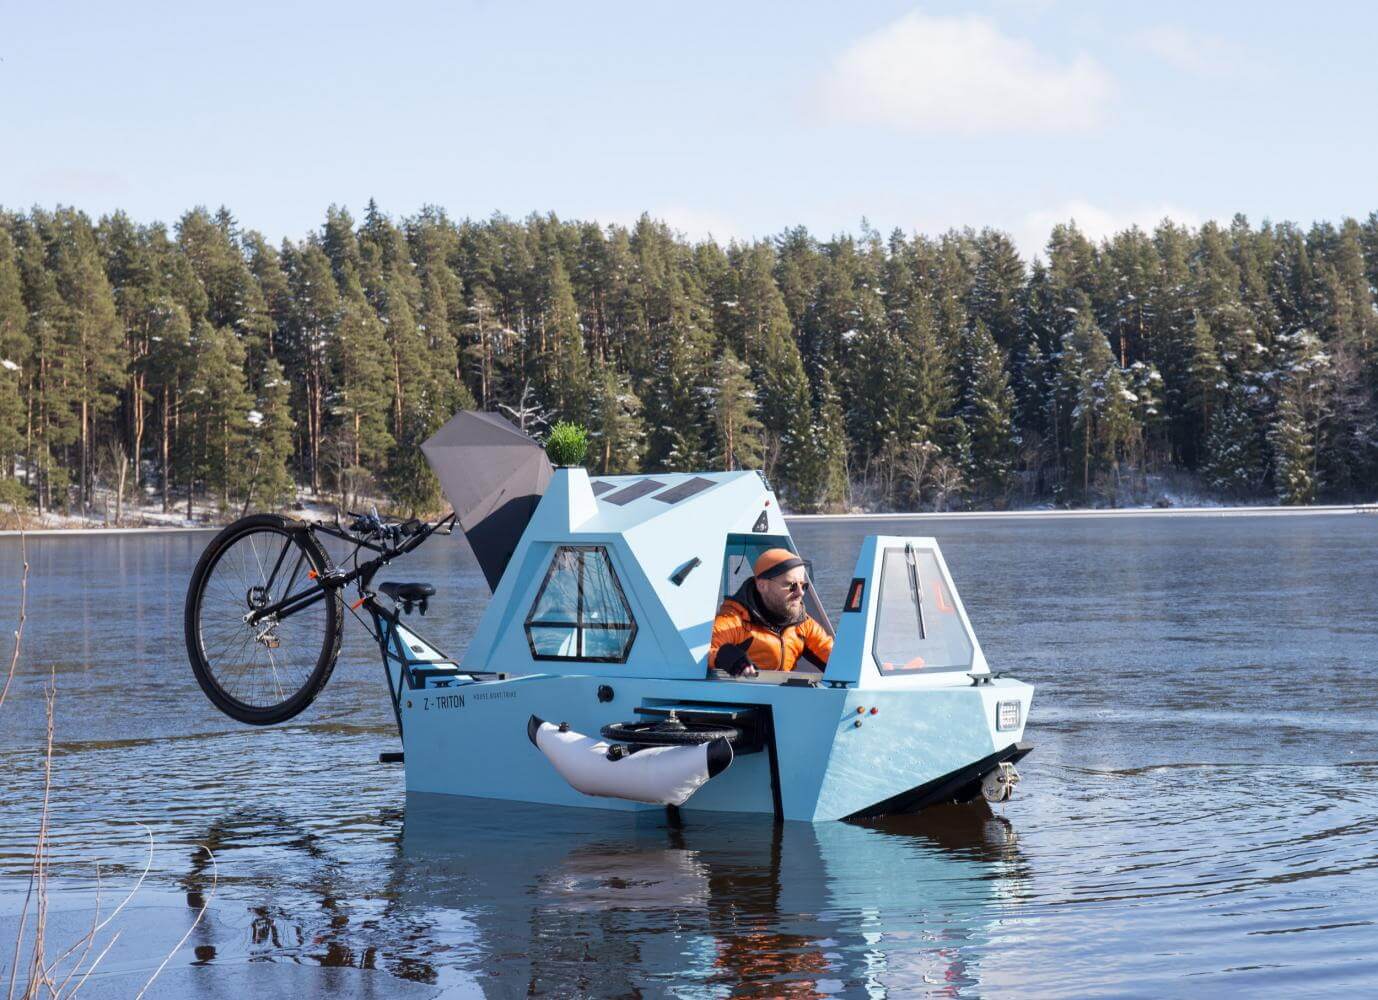 Kwijtschelding Vel fusie Mini-camper, boot én fiets ineen. | Wereldreizigersclub